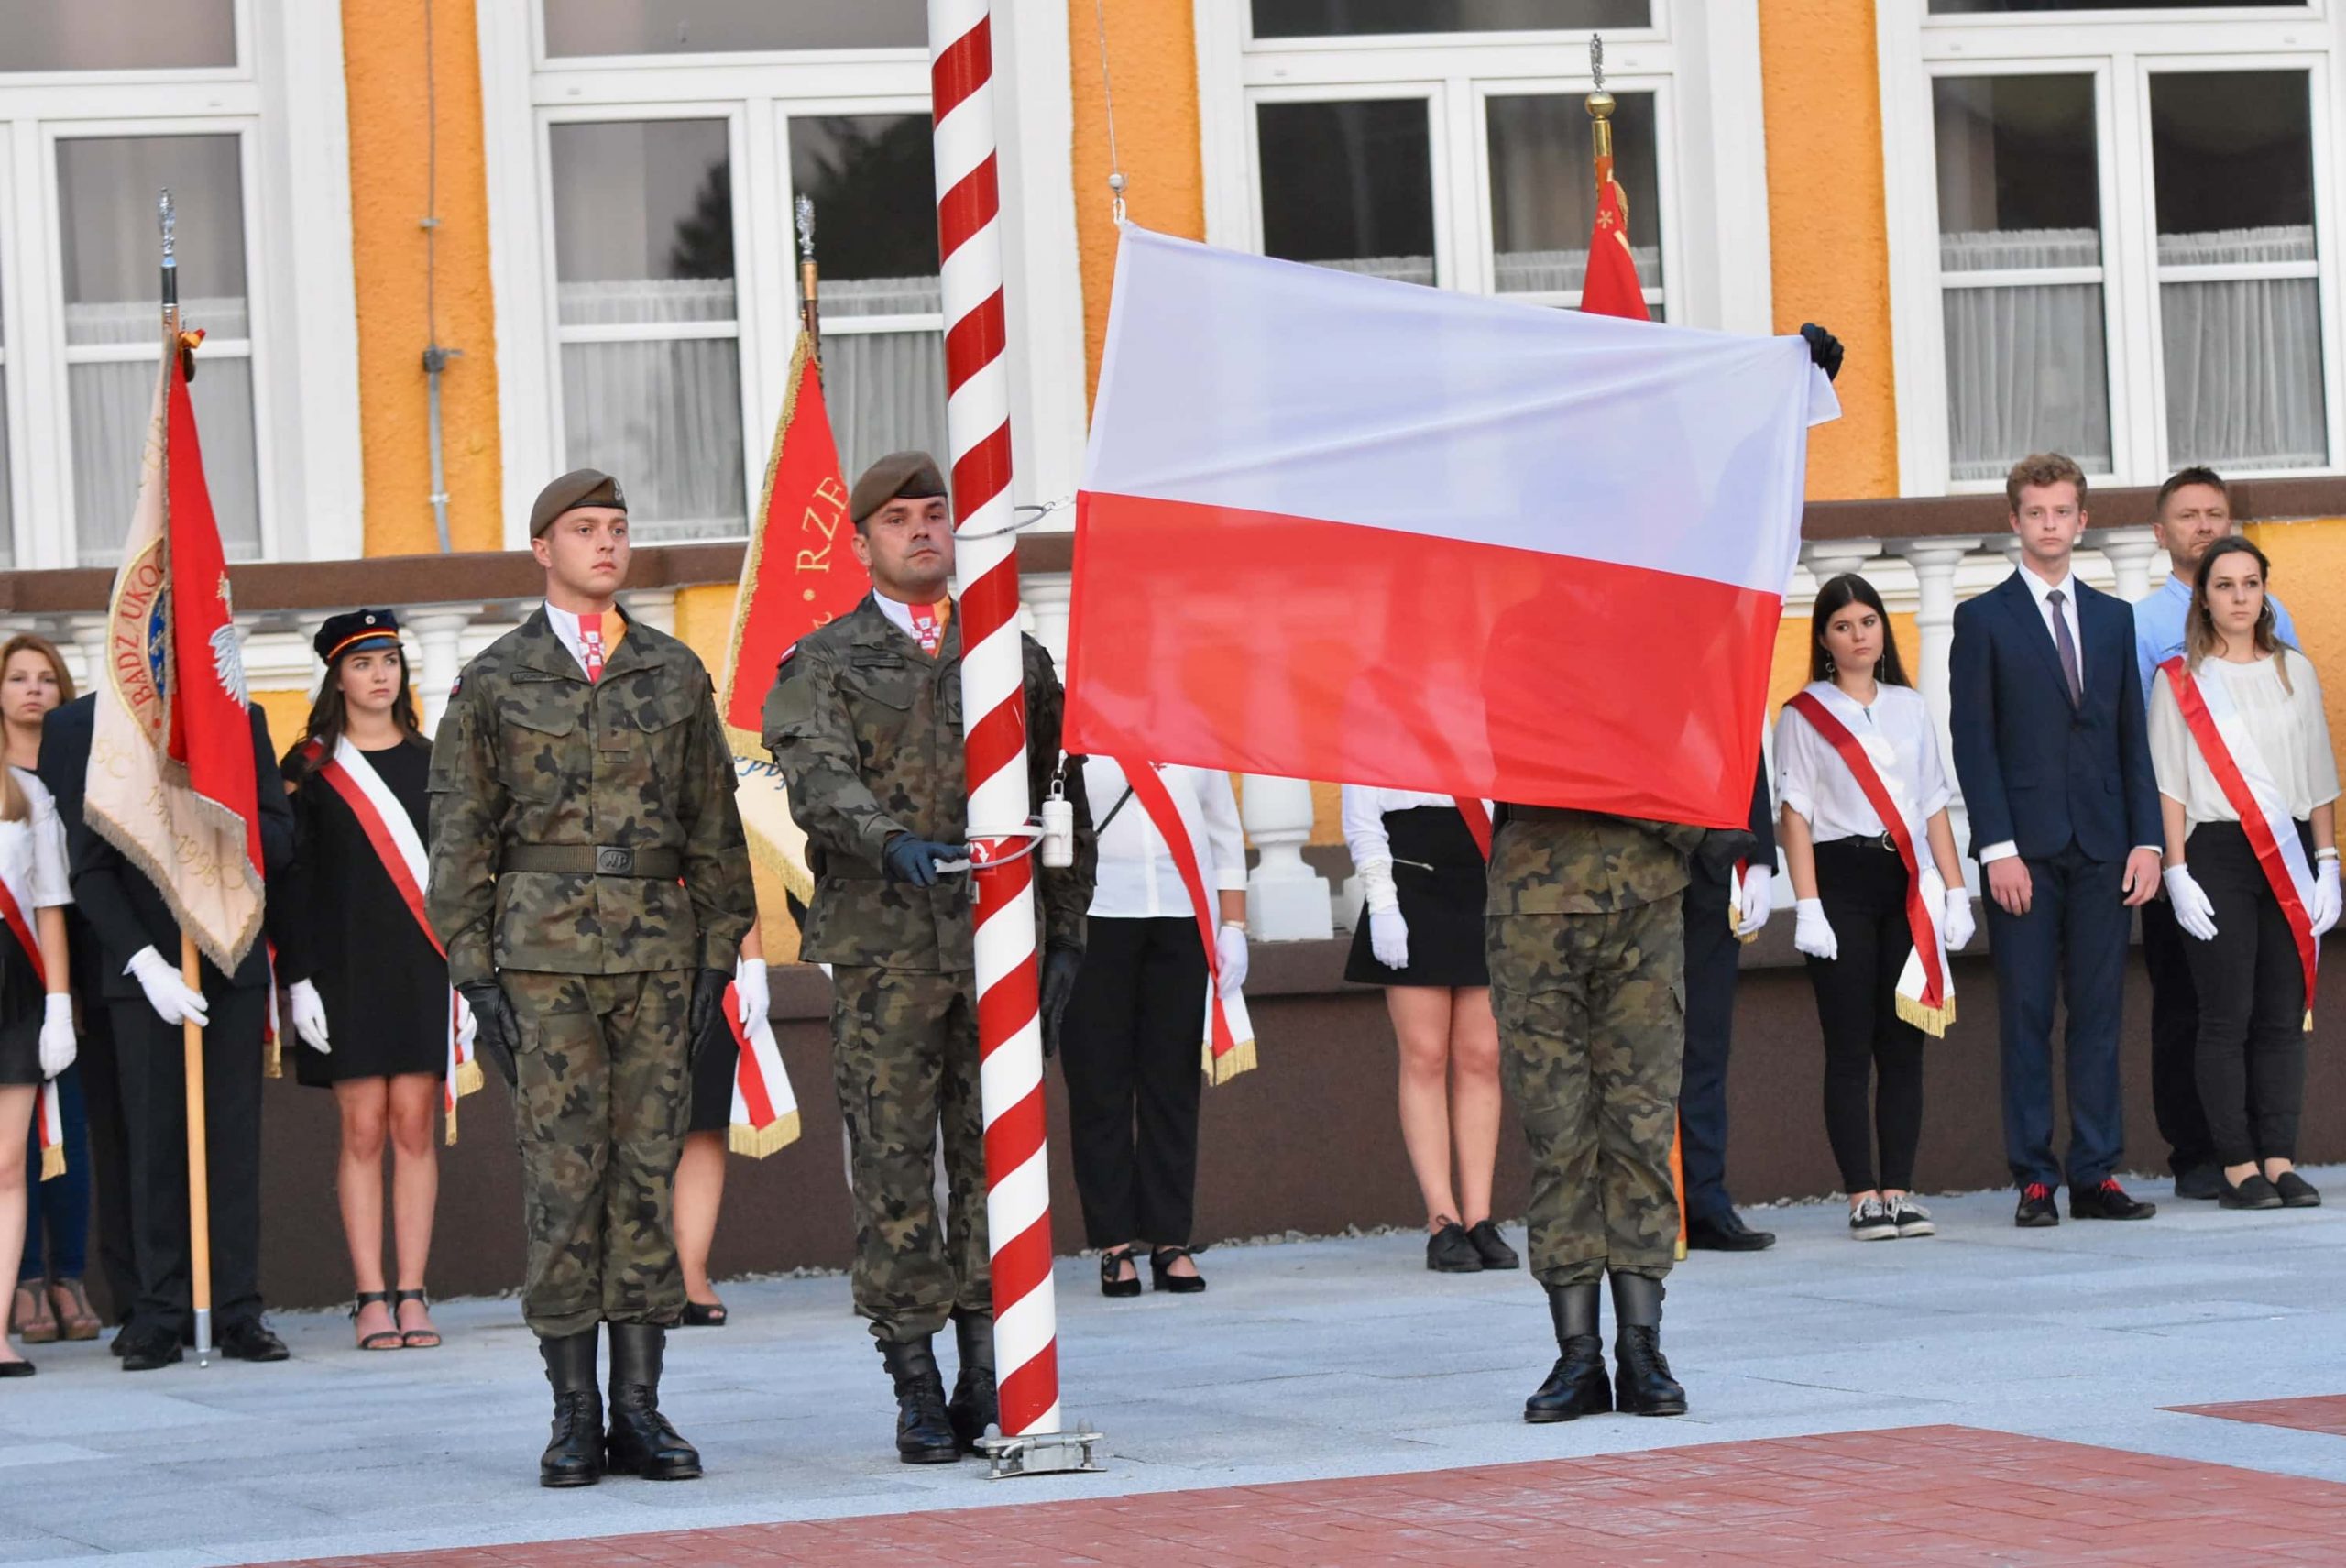 dsc 6320 scaled Upamiętnili 80. rocznicę napaści Niemiec na Polskę